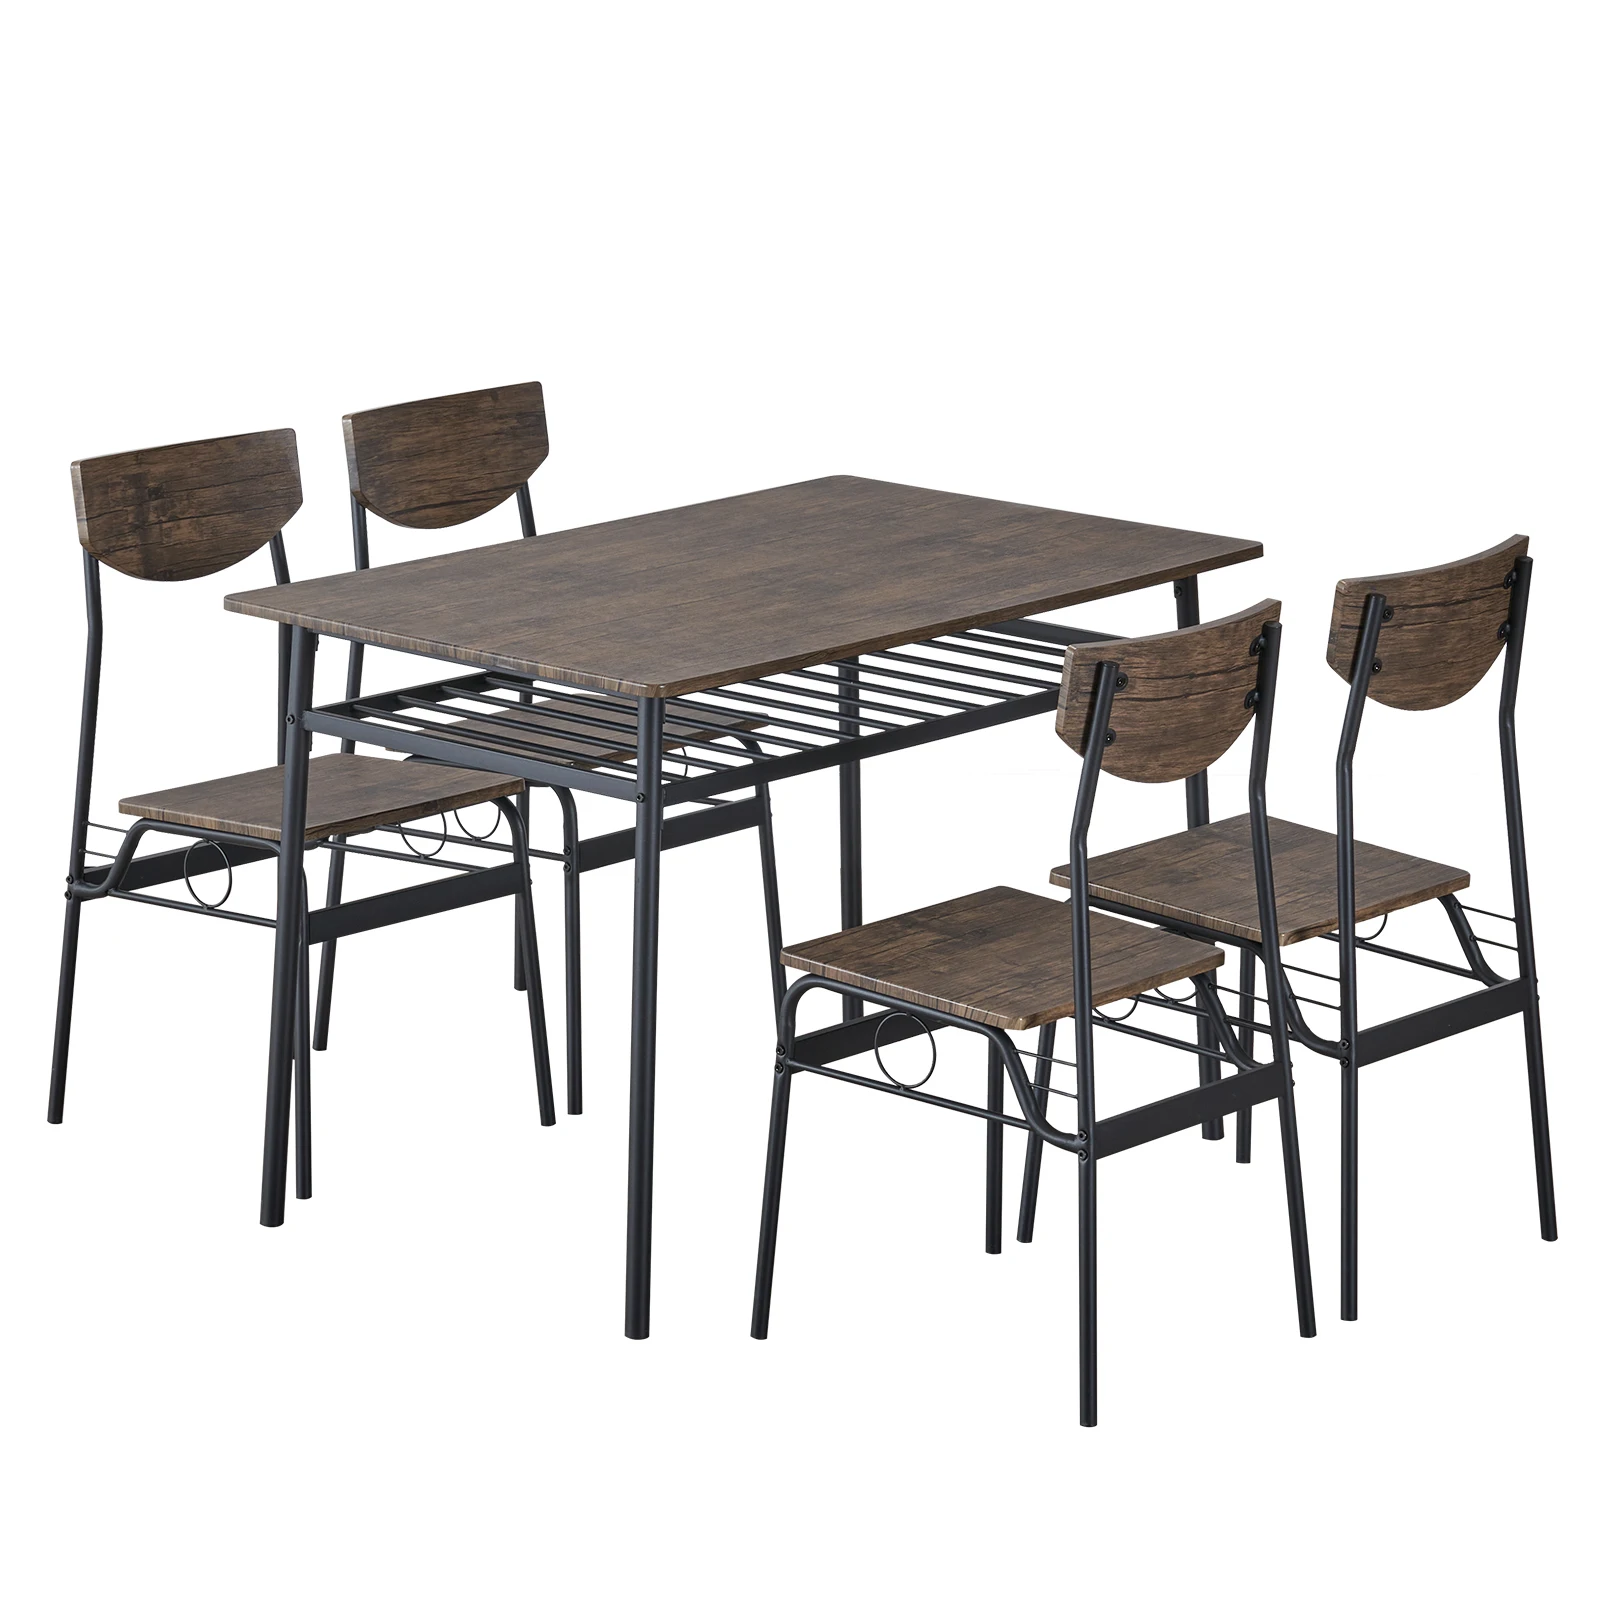 

Прямоугольная Разборка и сборка P2 доска с железным отсеком 1 стол 4 стула обеденный стол и Набор стульев